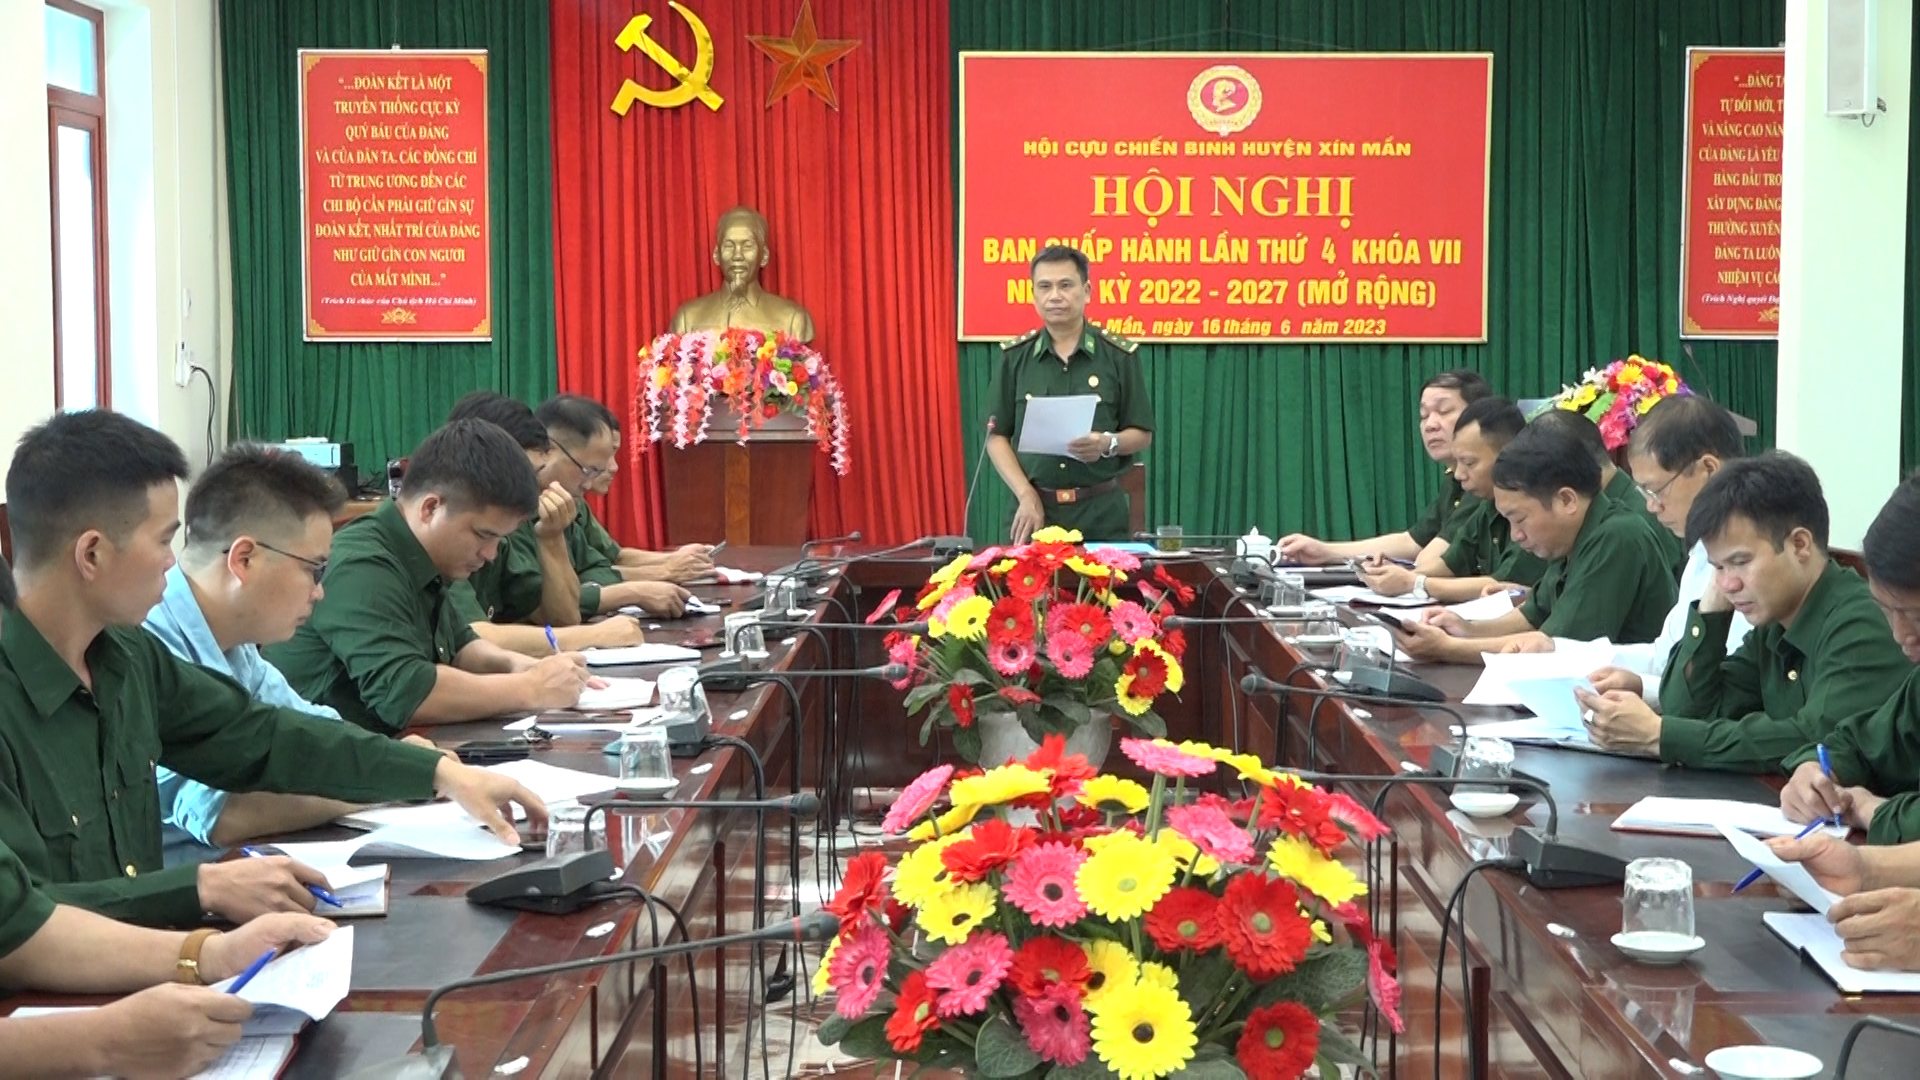 Hội nghị Ban Chấp hành Hội Cựu chiến binh huyện Xín Mần lần thứ 4 khoá VII, nhiệm kỳ 2022-2027